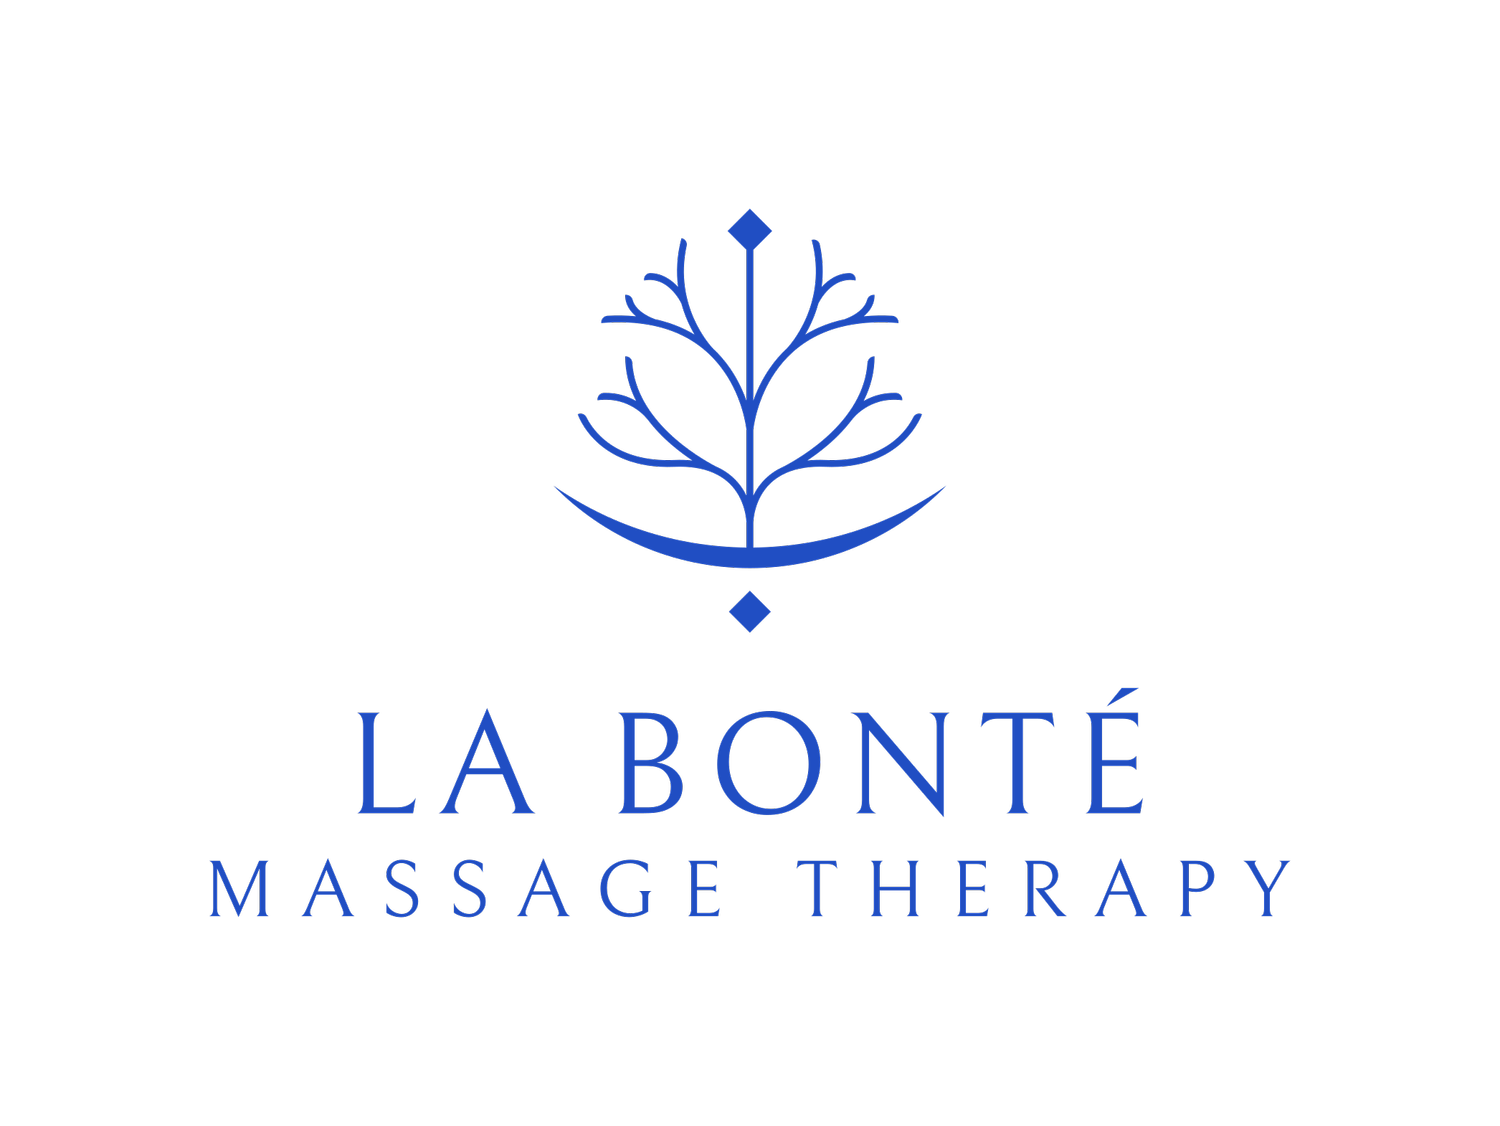 La Bonté Massage Therapy